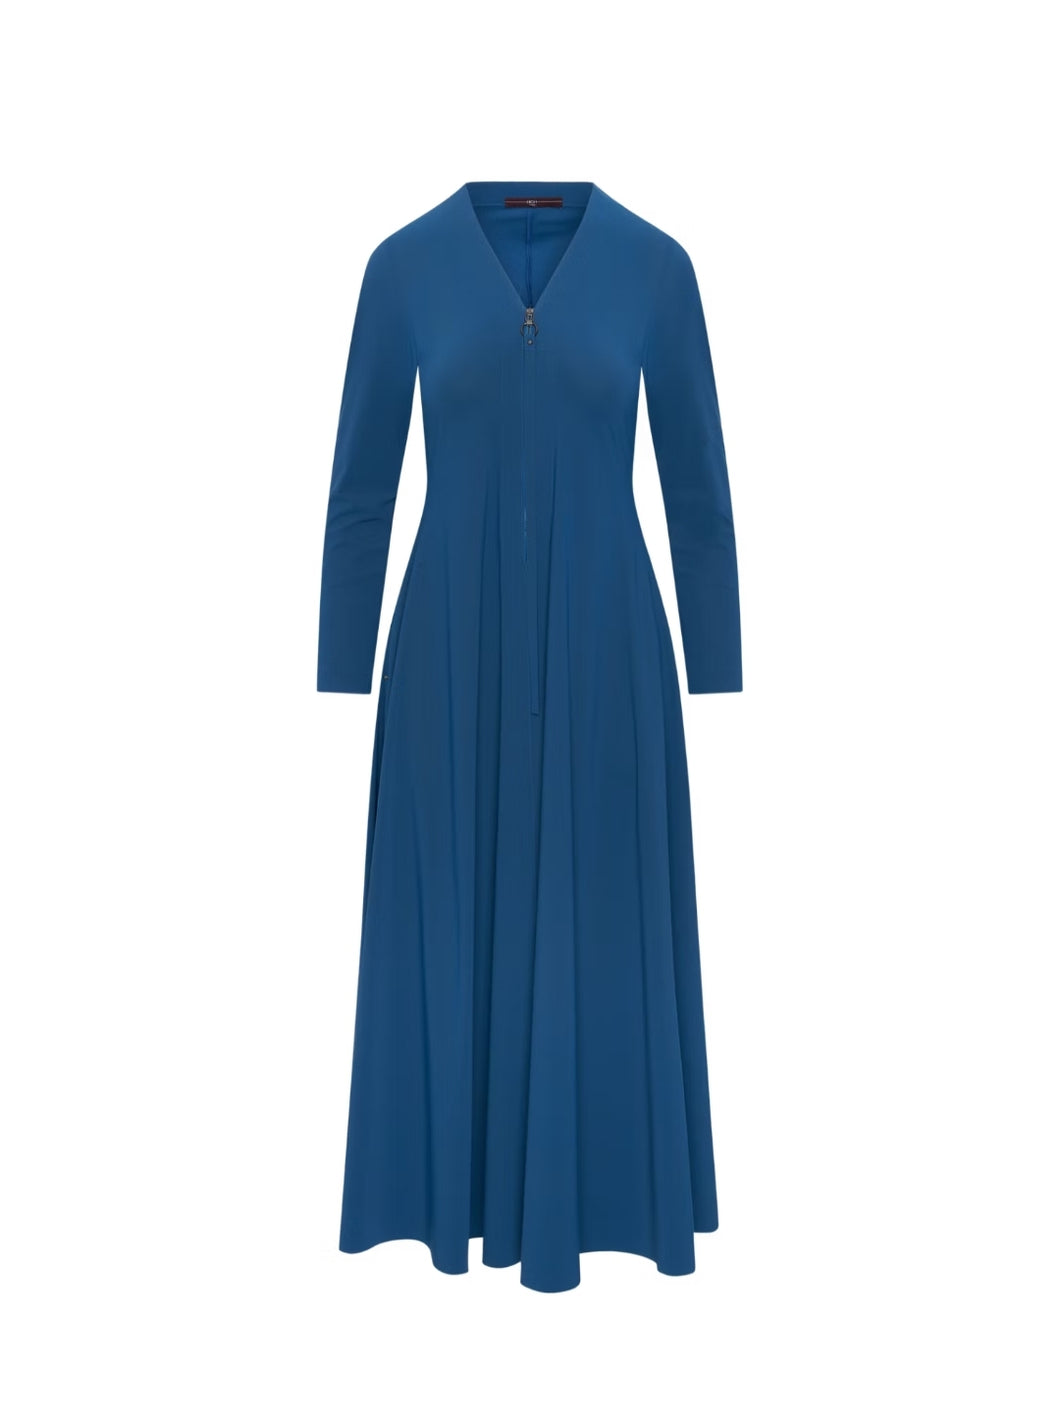 HIGH TECH Mittelblaues Maxi-Kleid mit Reißverschluss auf der Vorderseite